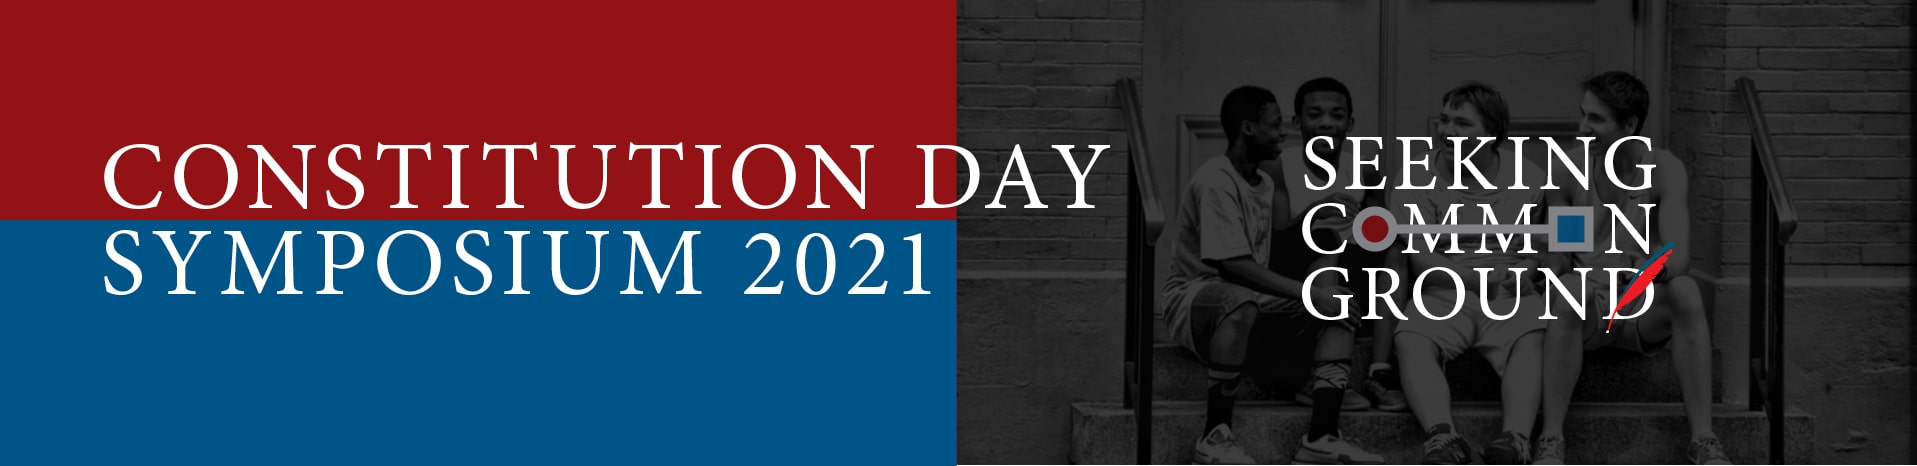 Constitution Day Symposium 2021